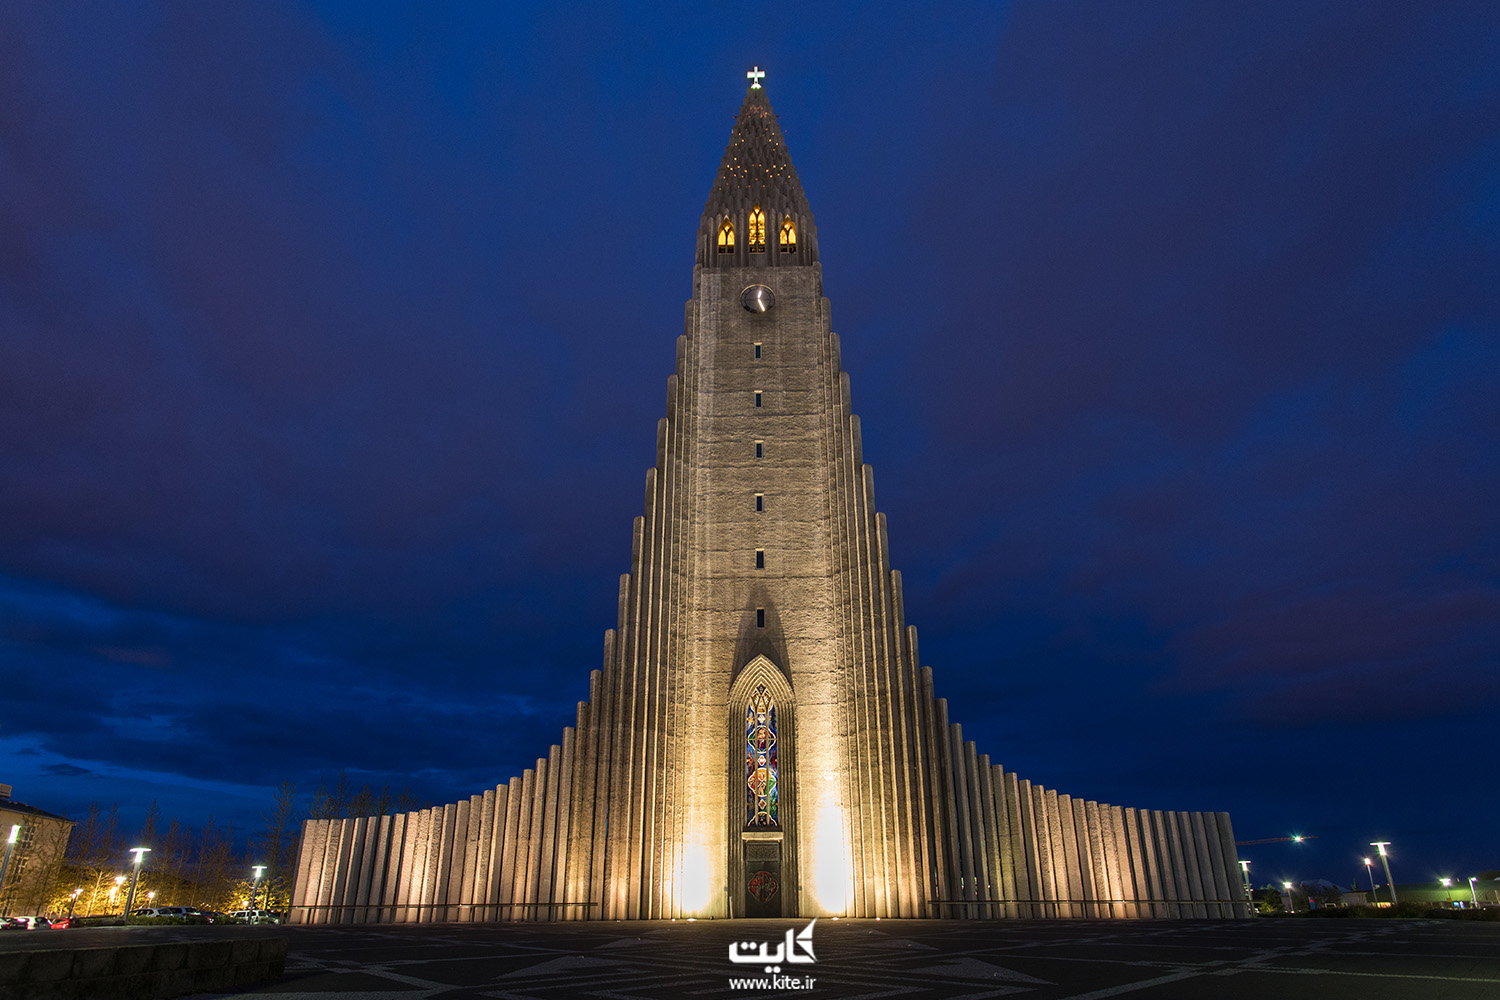 کلیسای هالگریم در ریکیاویک ایسلند